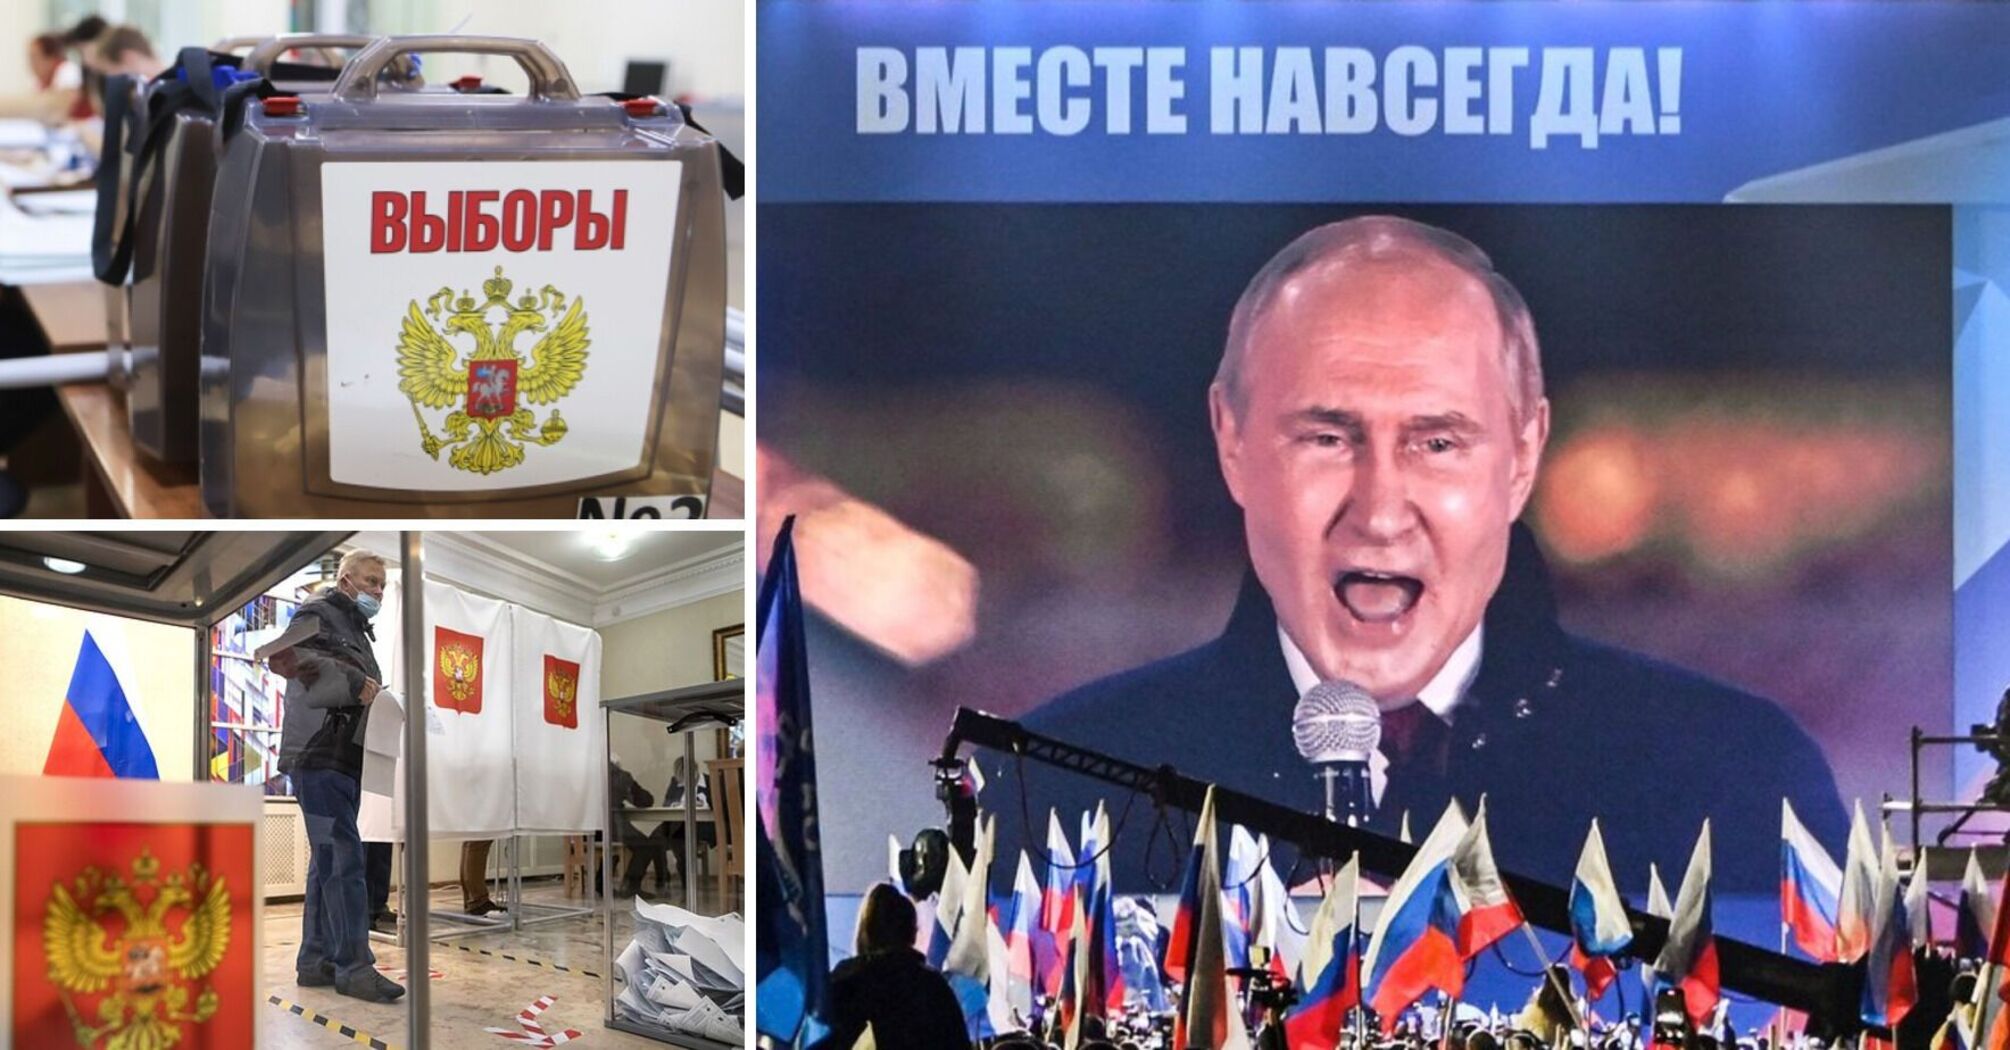 Rosja wyznacza datę 'wyborów' prezydenckich: czego chce Putin i jaki strach panuje na Kremlu